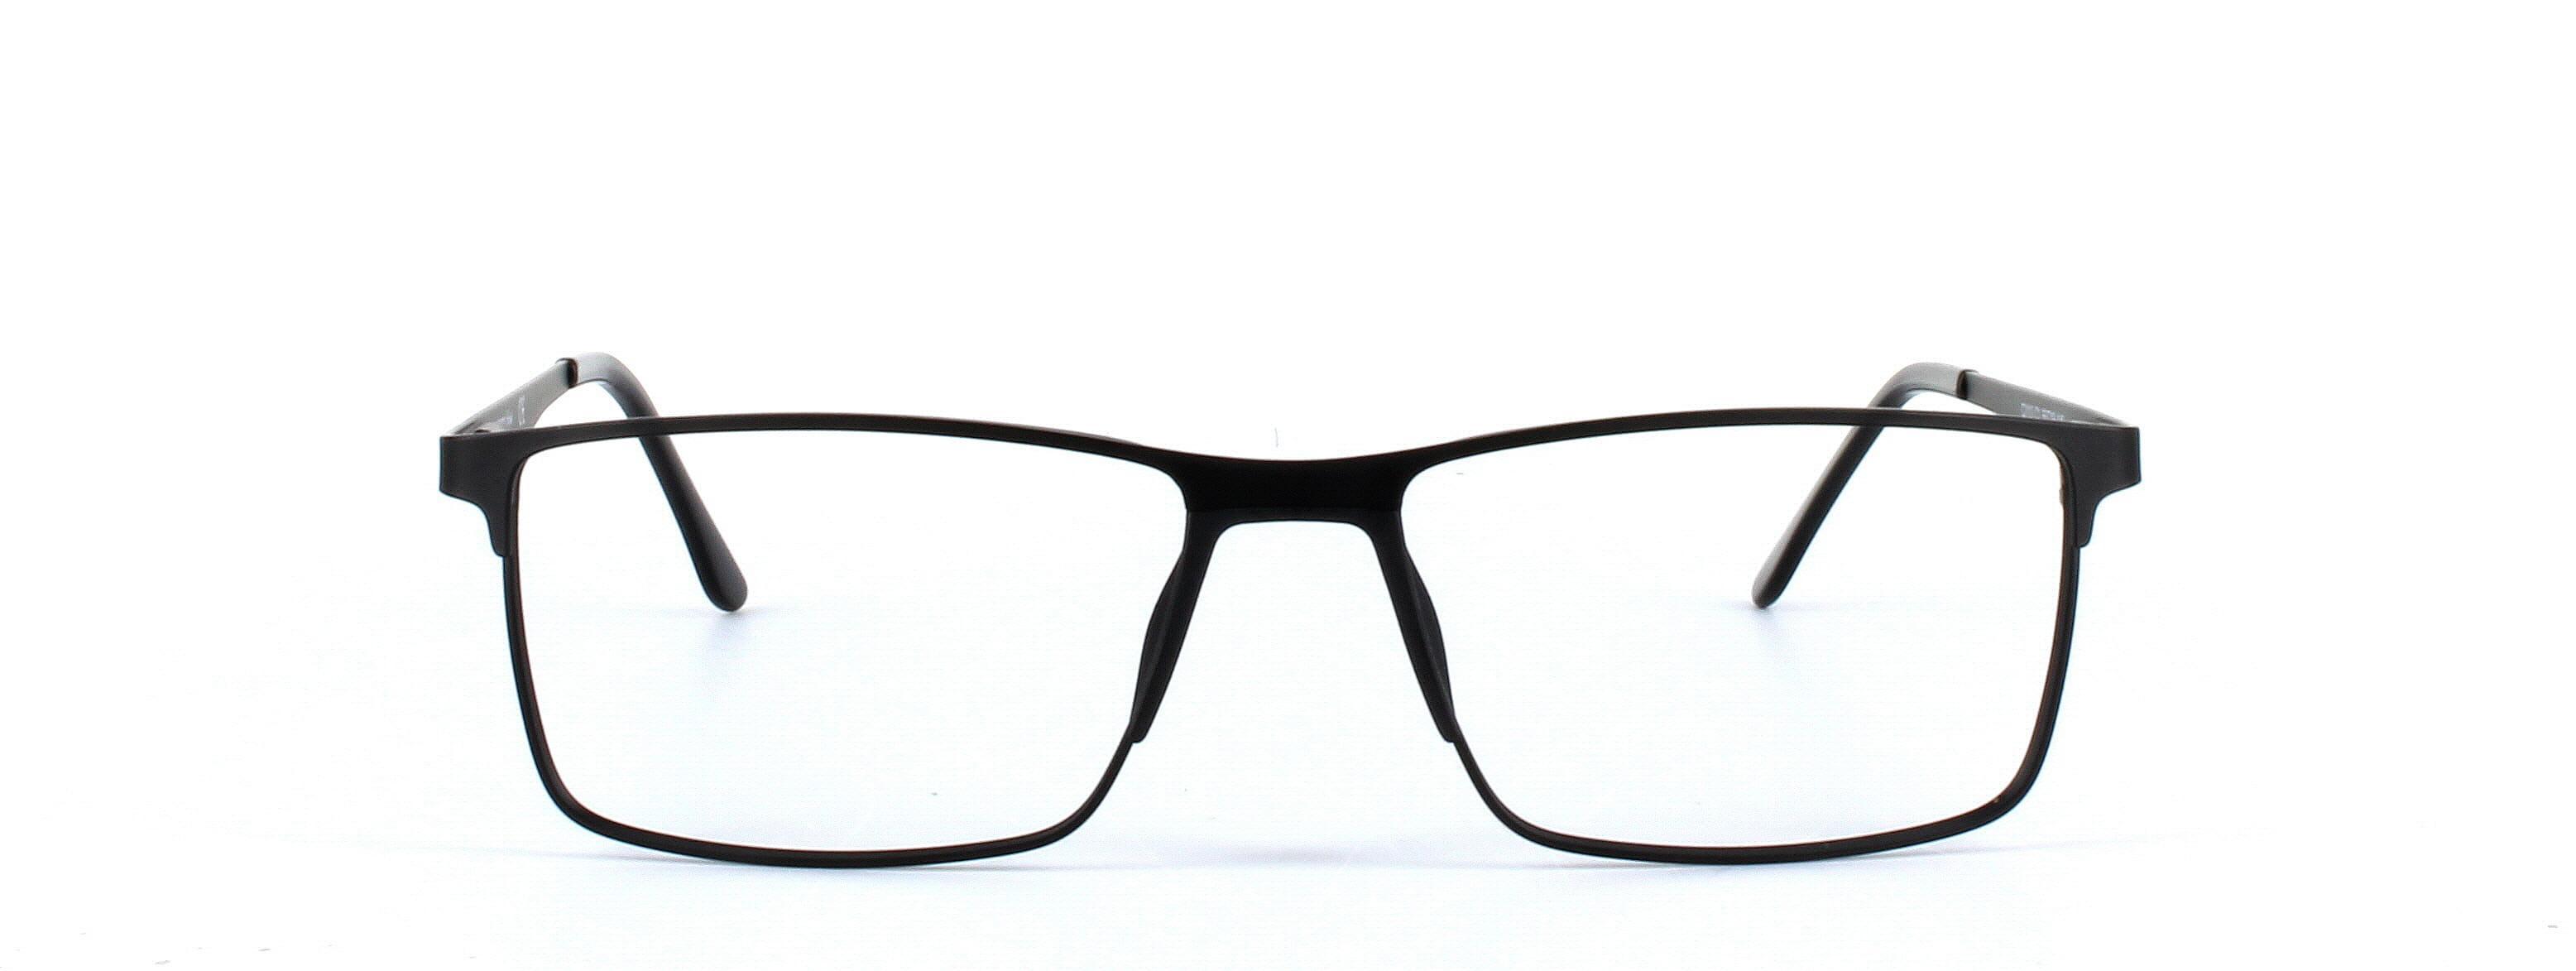 Burnaby Black Full Rim Rectangular Metal Glasses - Image View 5